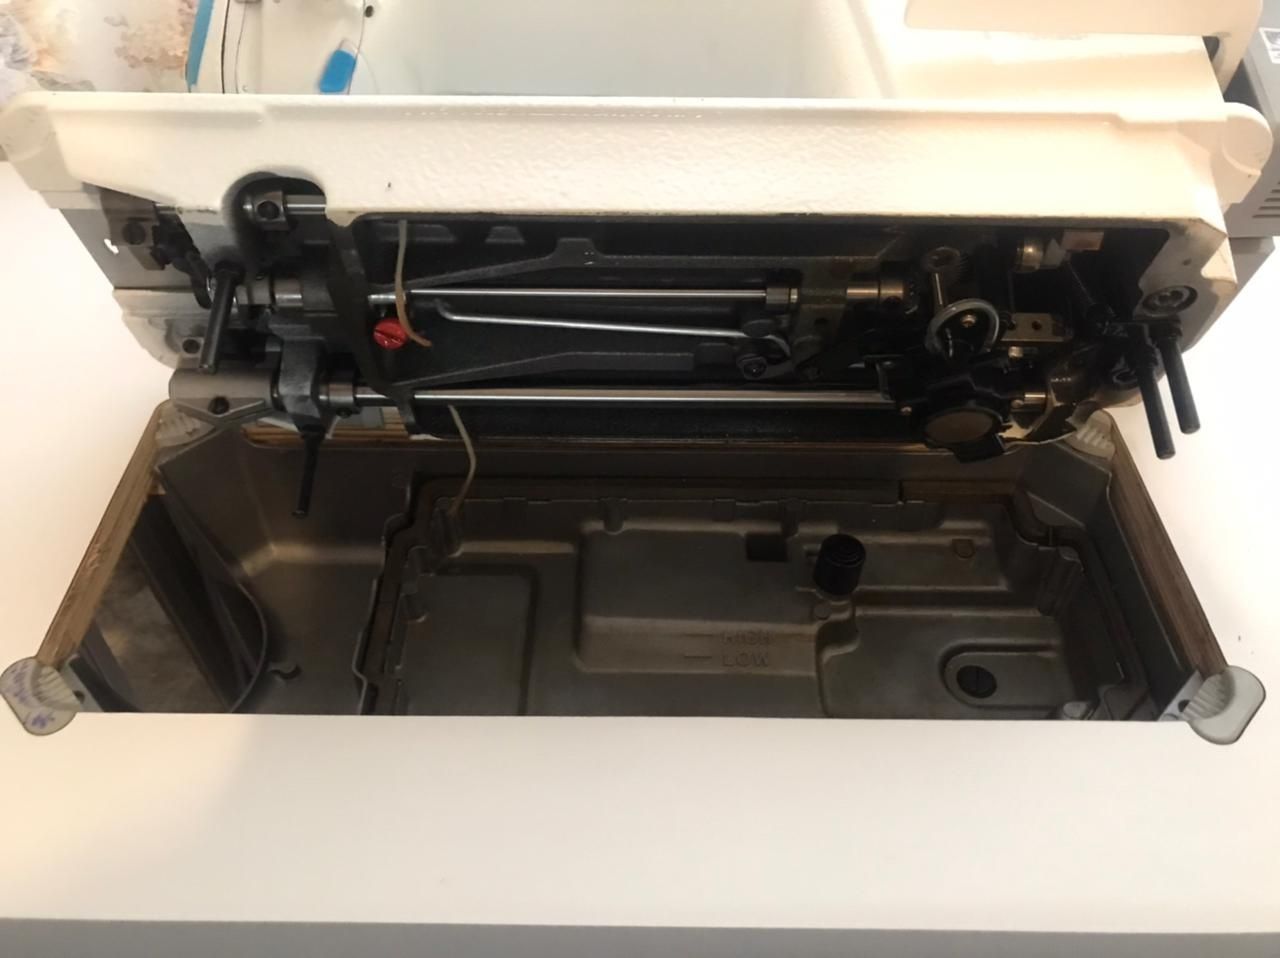 Jack JK-F4 промышленная швейная машина